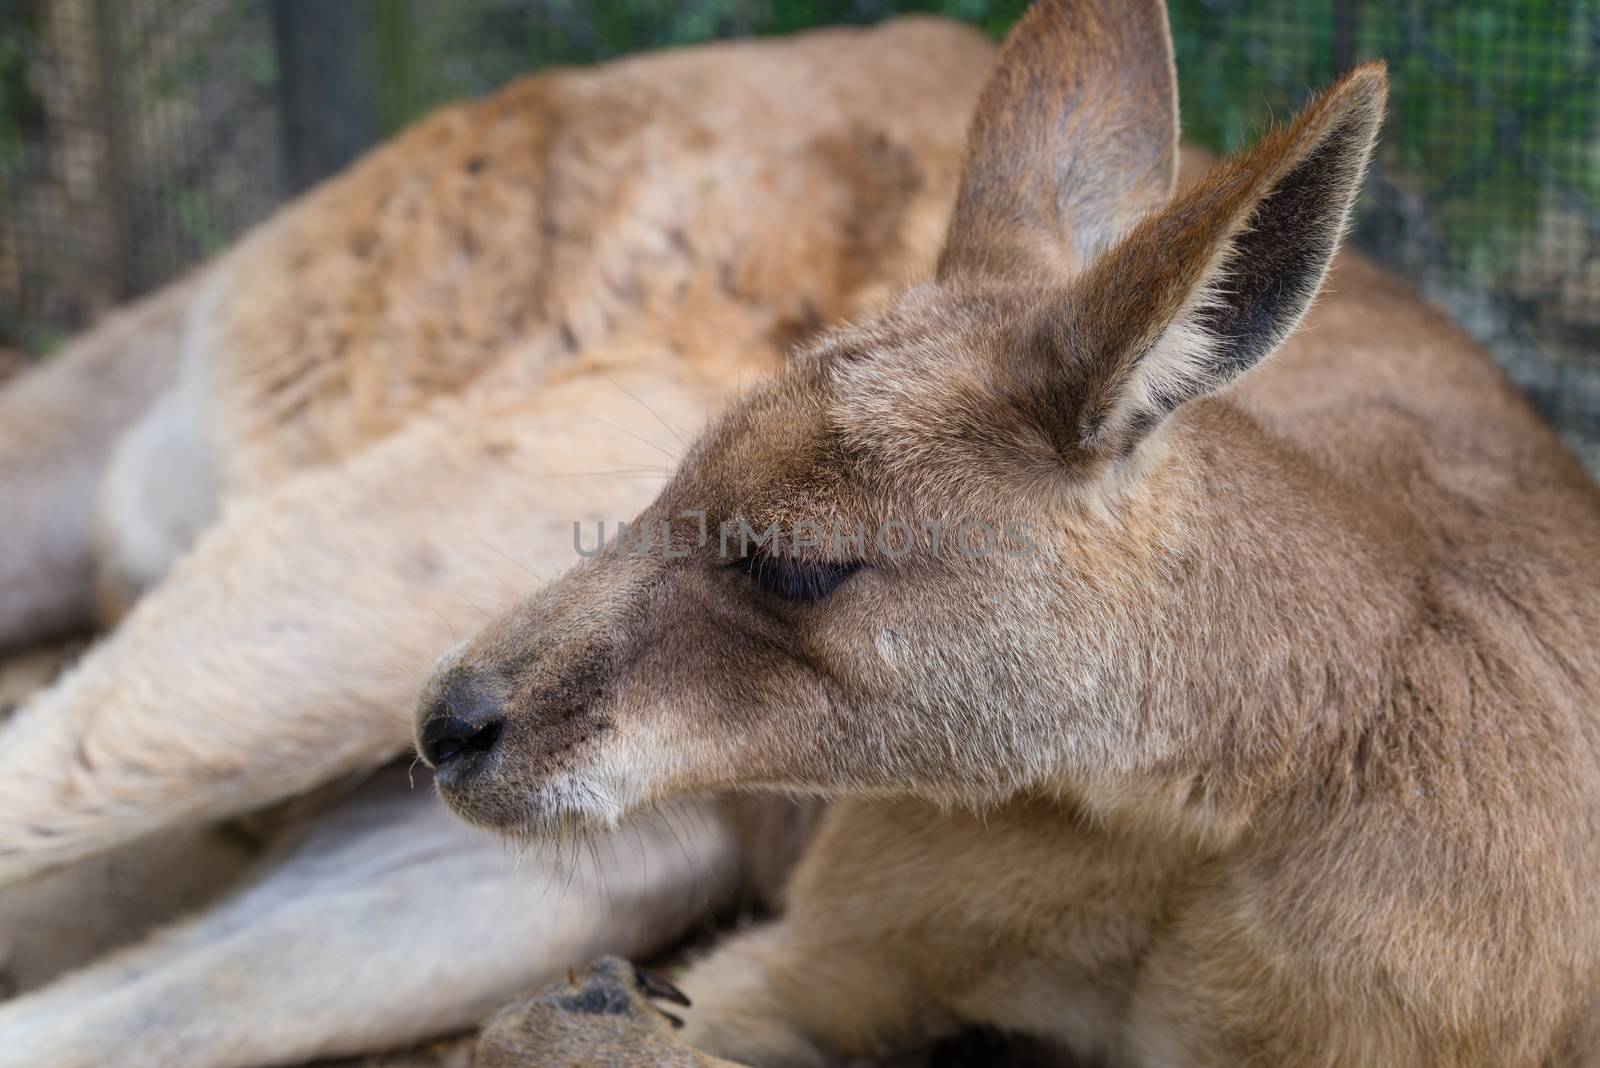 A close shot of a Kangaroo laying down relaxing